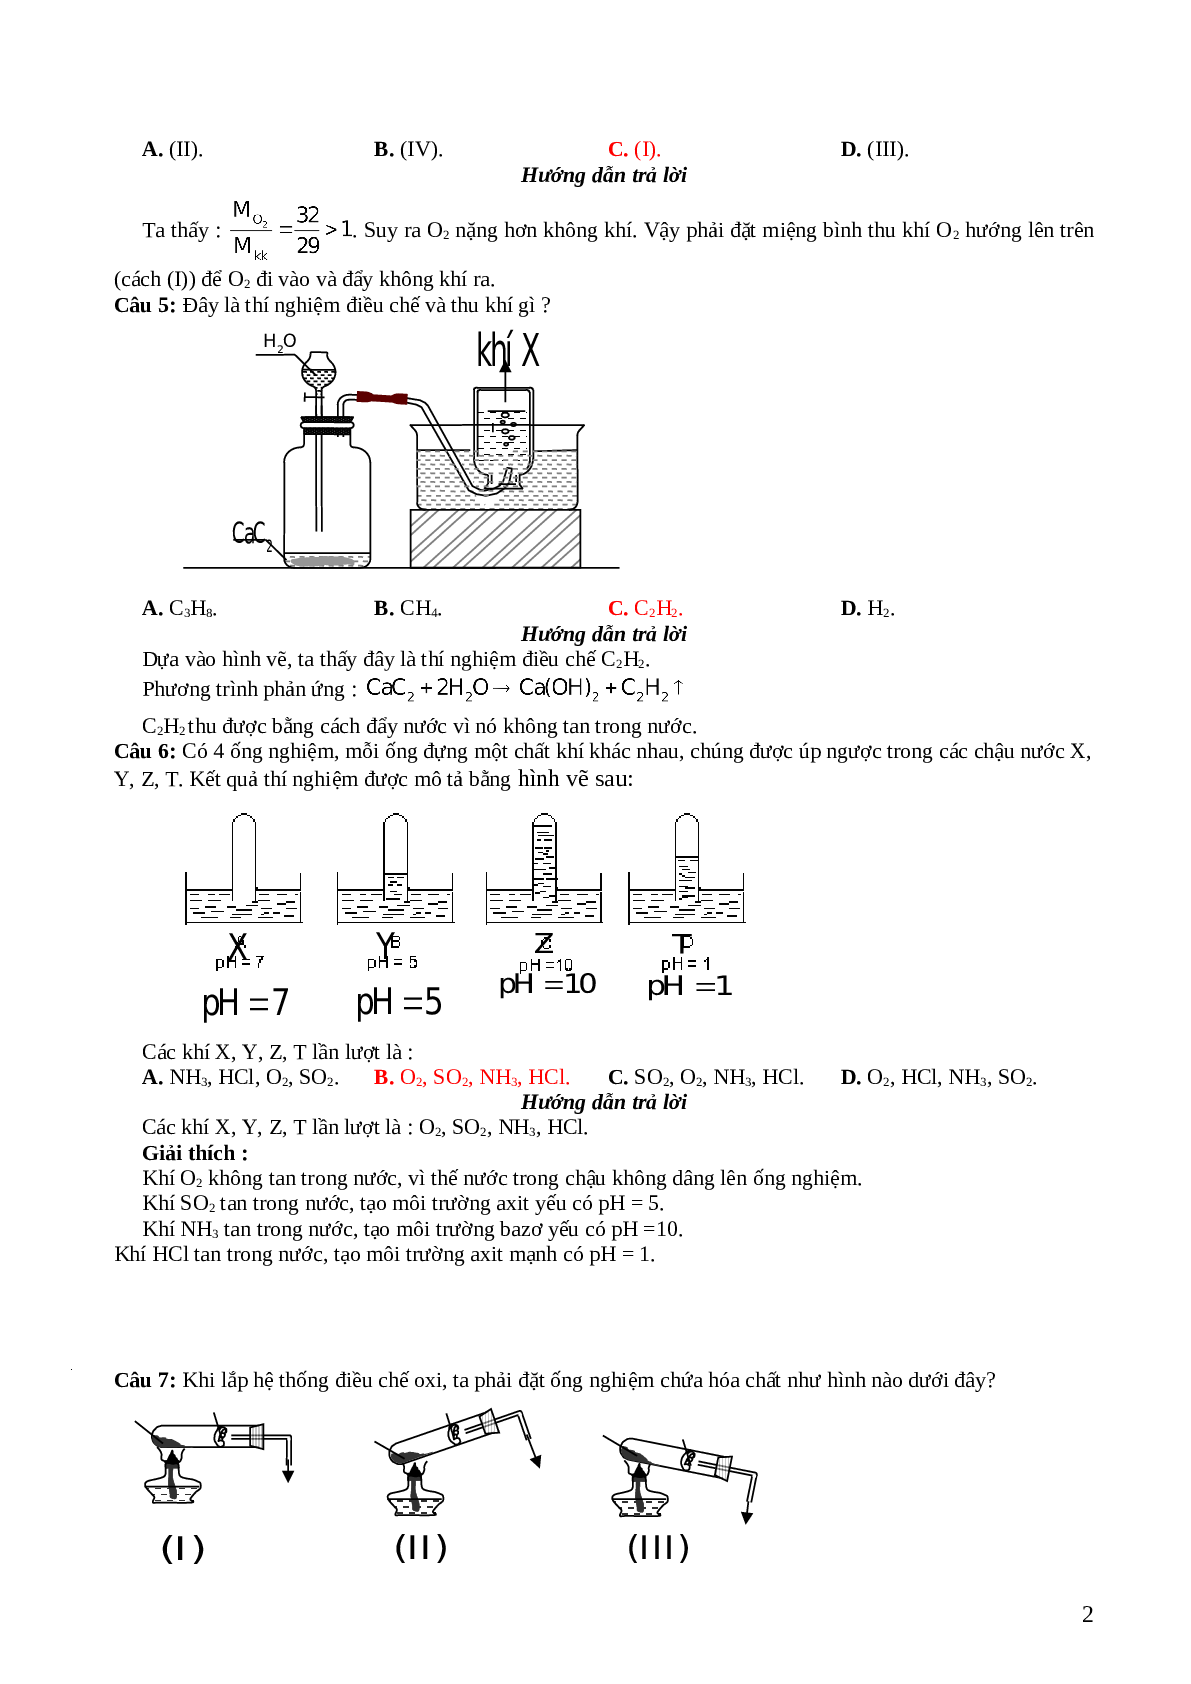 33 câu trắc nghiệm về hình  vẽ thí nghiệm hóa học lớp 12 có đáp án 2023 (trang 2)